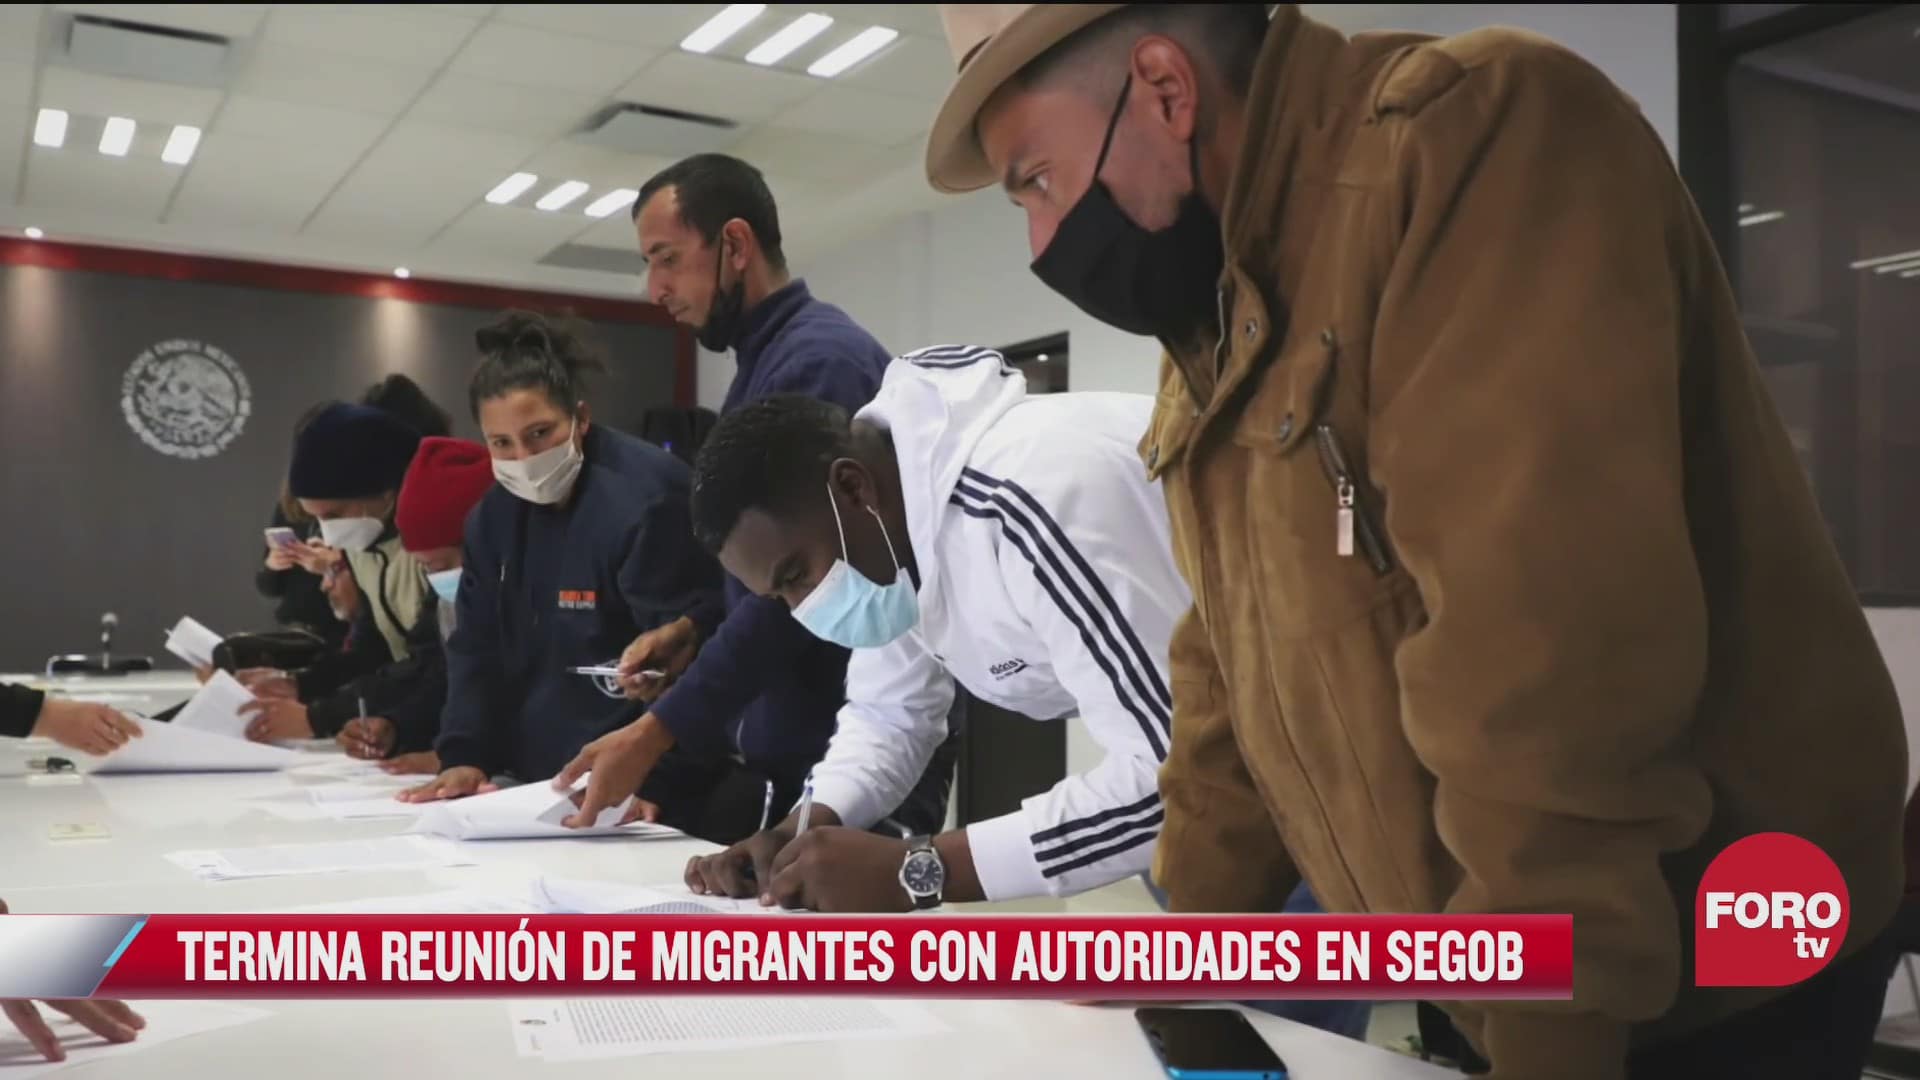 termina reunion de migrantes con autoridades de segob tras casi seis horas